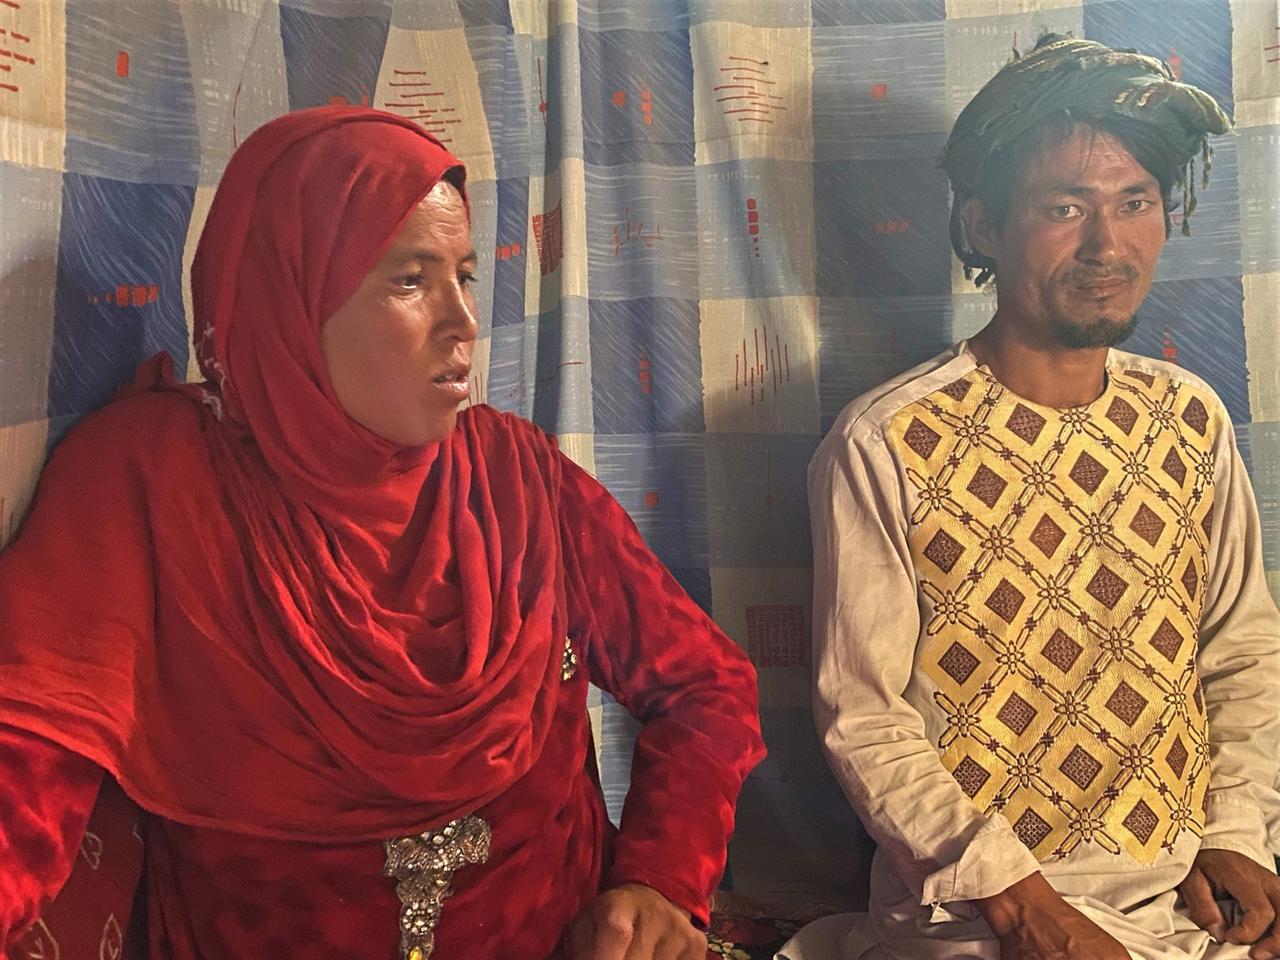 Ein Paar in afghanischer Tracht - sie mit einem roten Tuch über dem Kopf - sitzt nebeinander auf dem Boden.